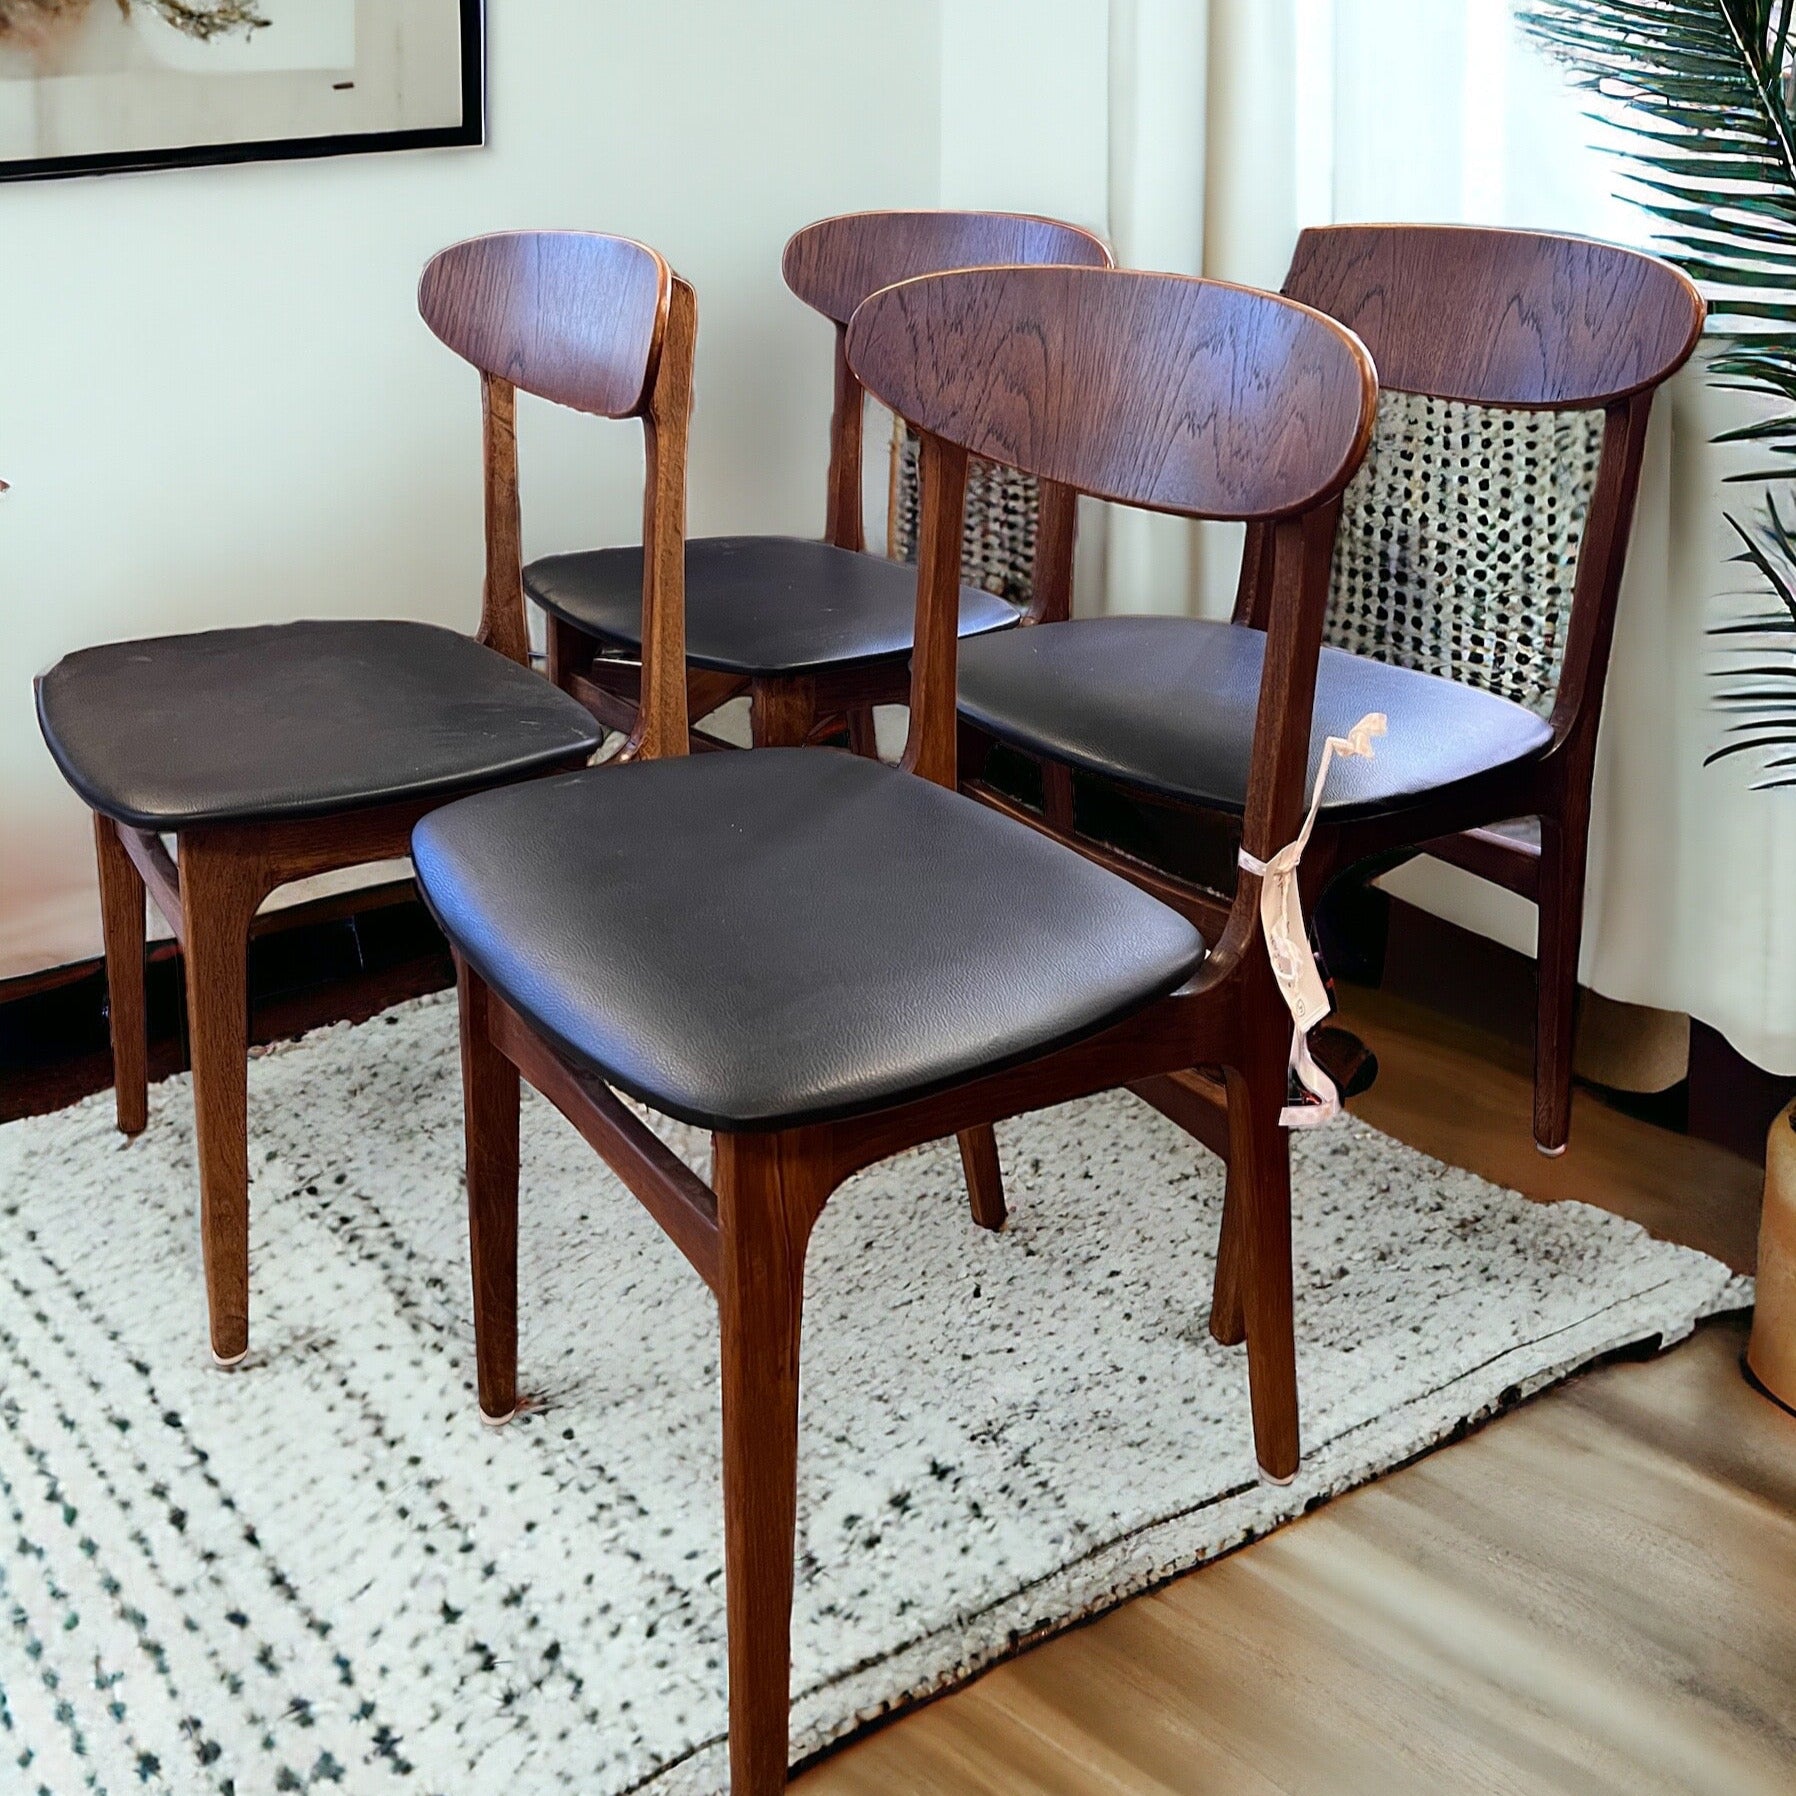 De fyra stolarna har en vackert svängd rygg och bred sits vilket gör dem bekväma att sitta i. Stolarna är i teak med svart konstläder eller skai som det också kallas för. 